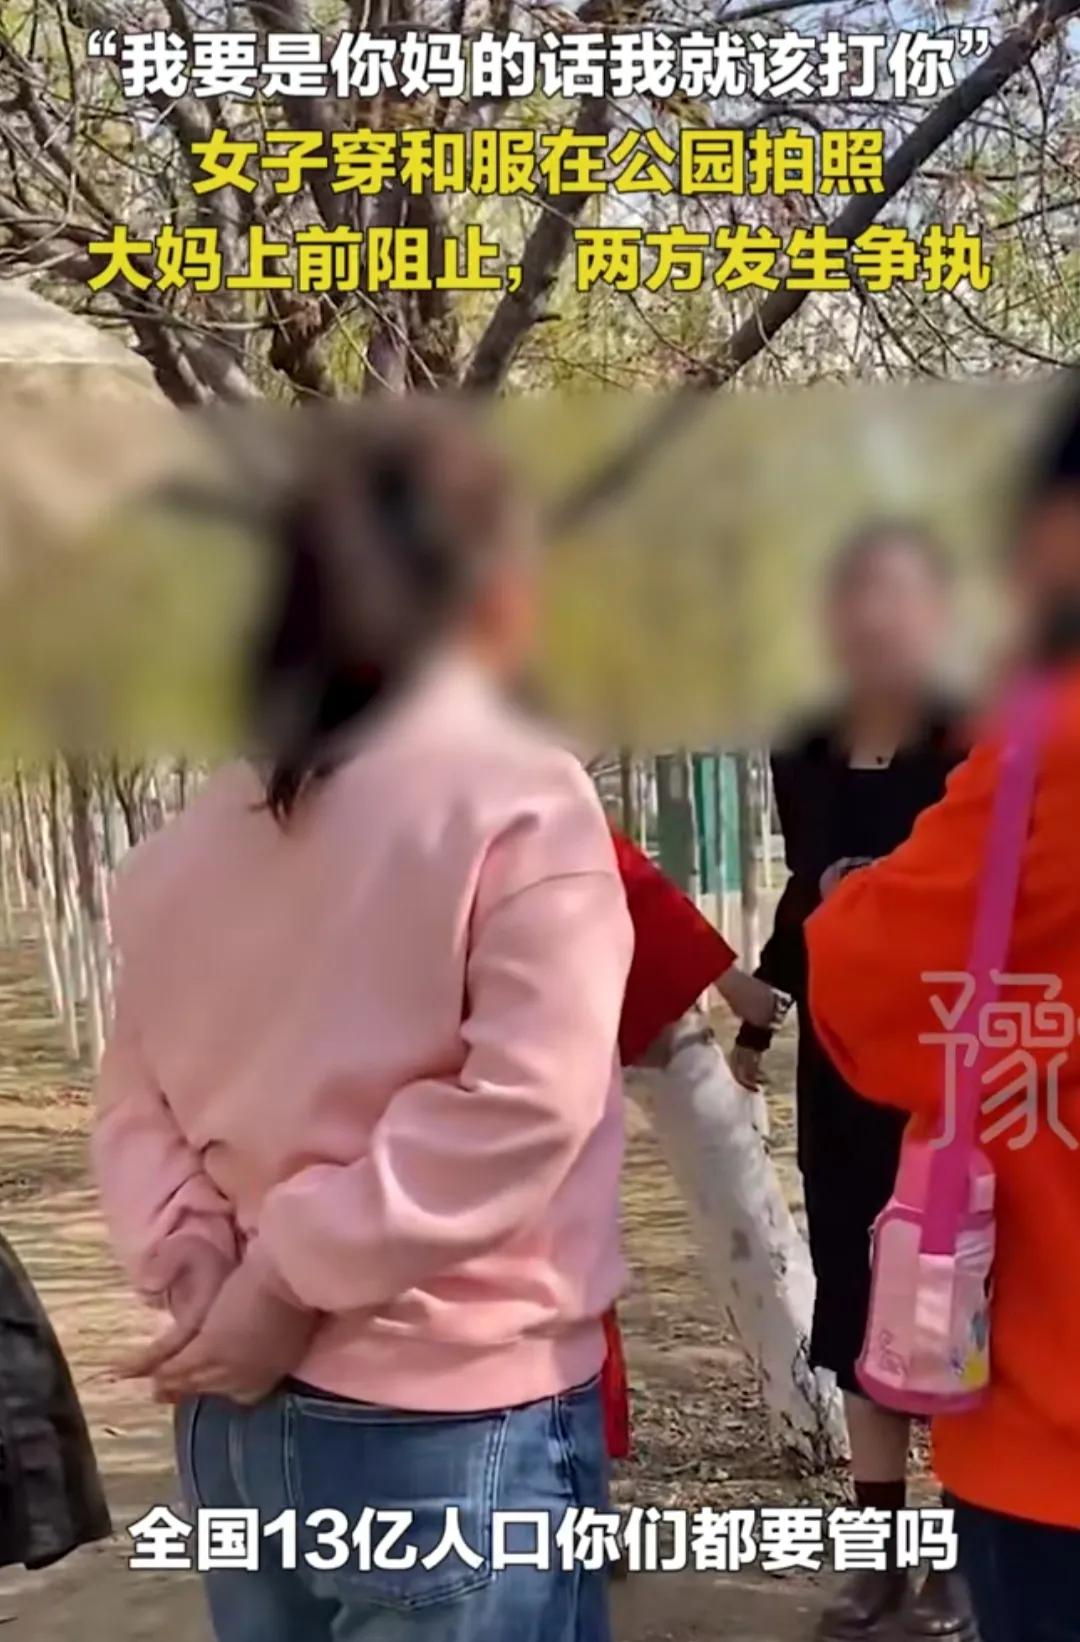 女子穿着和服在公园拍照，却被大妈上前阻止。两方发生争执